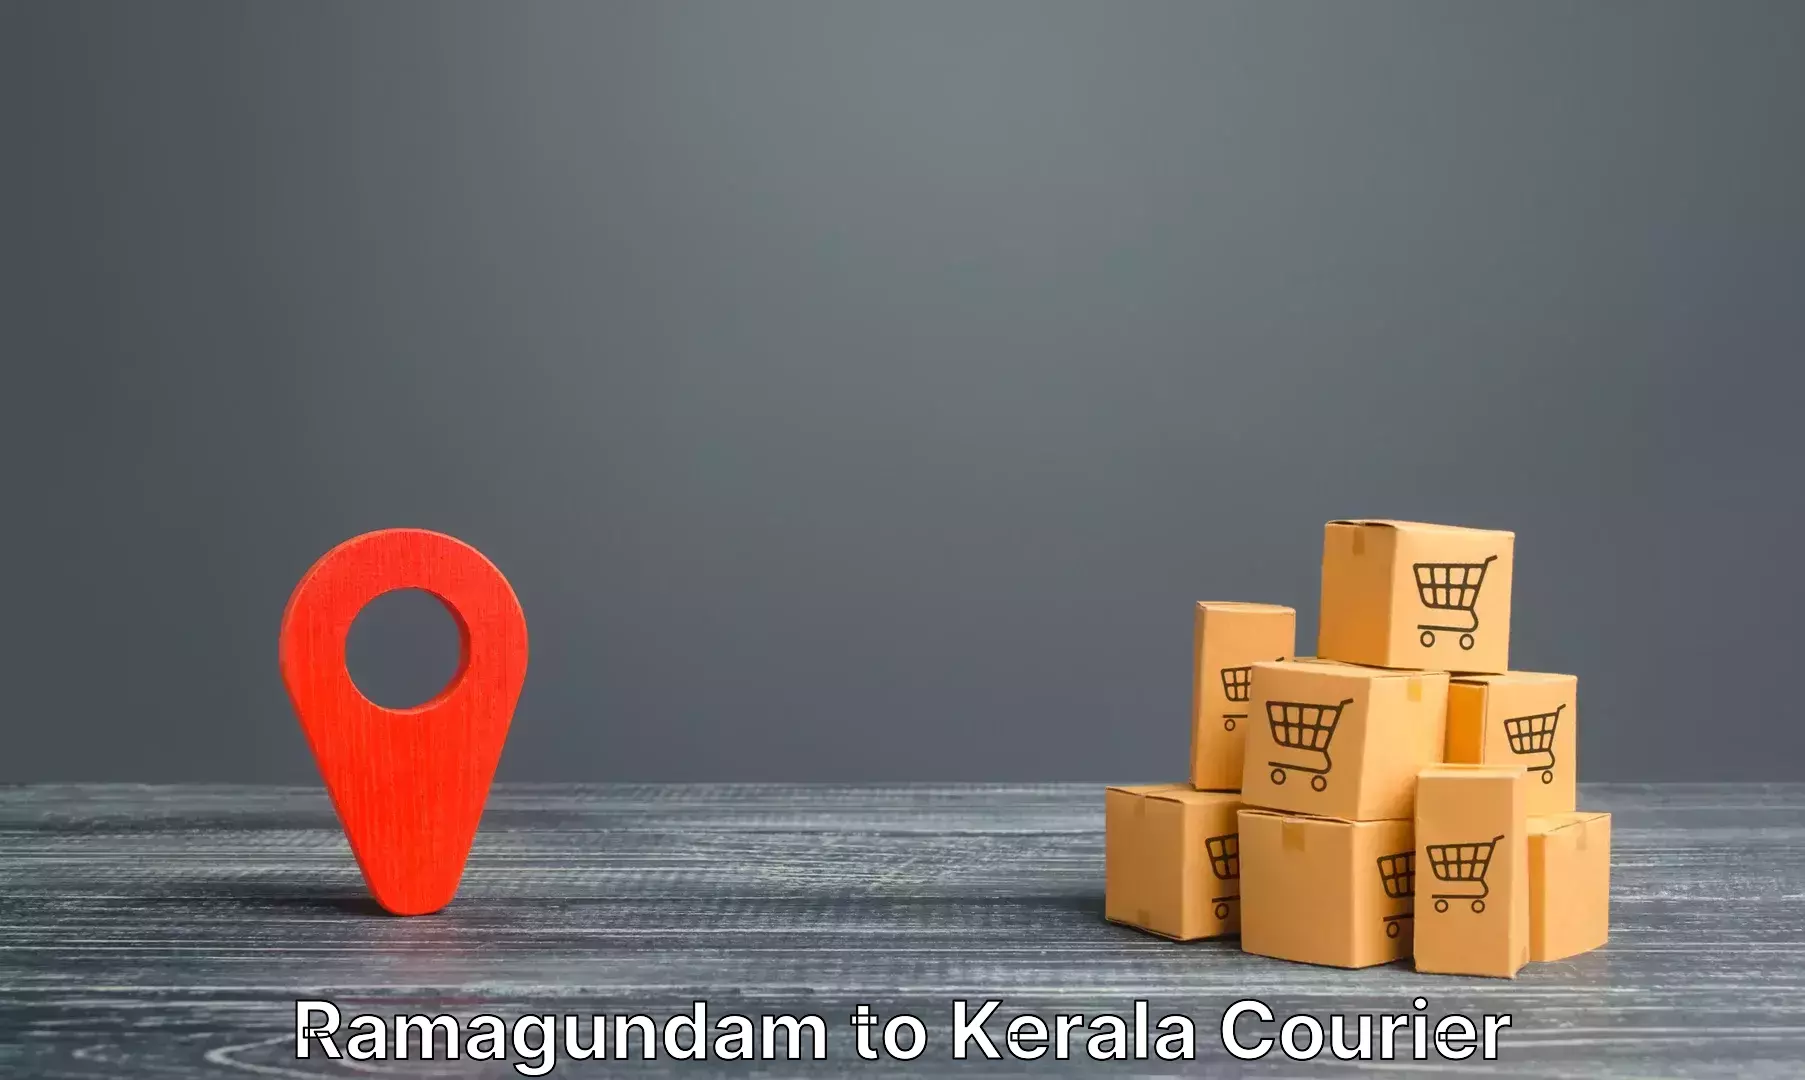 Personalized luggage shipping Ramagundam to Kerala